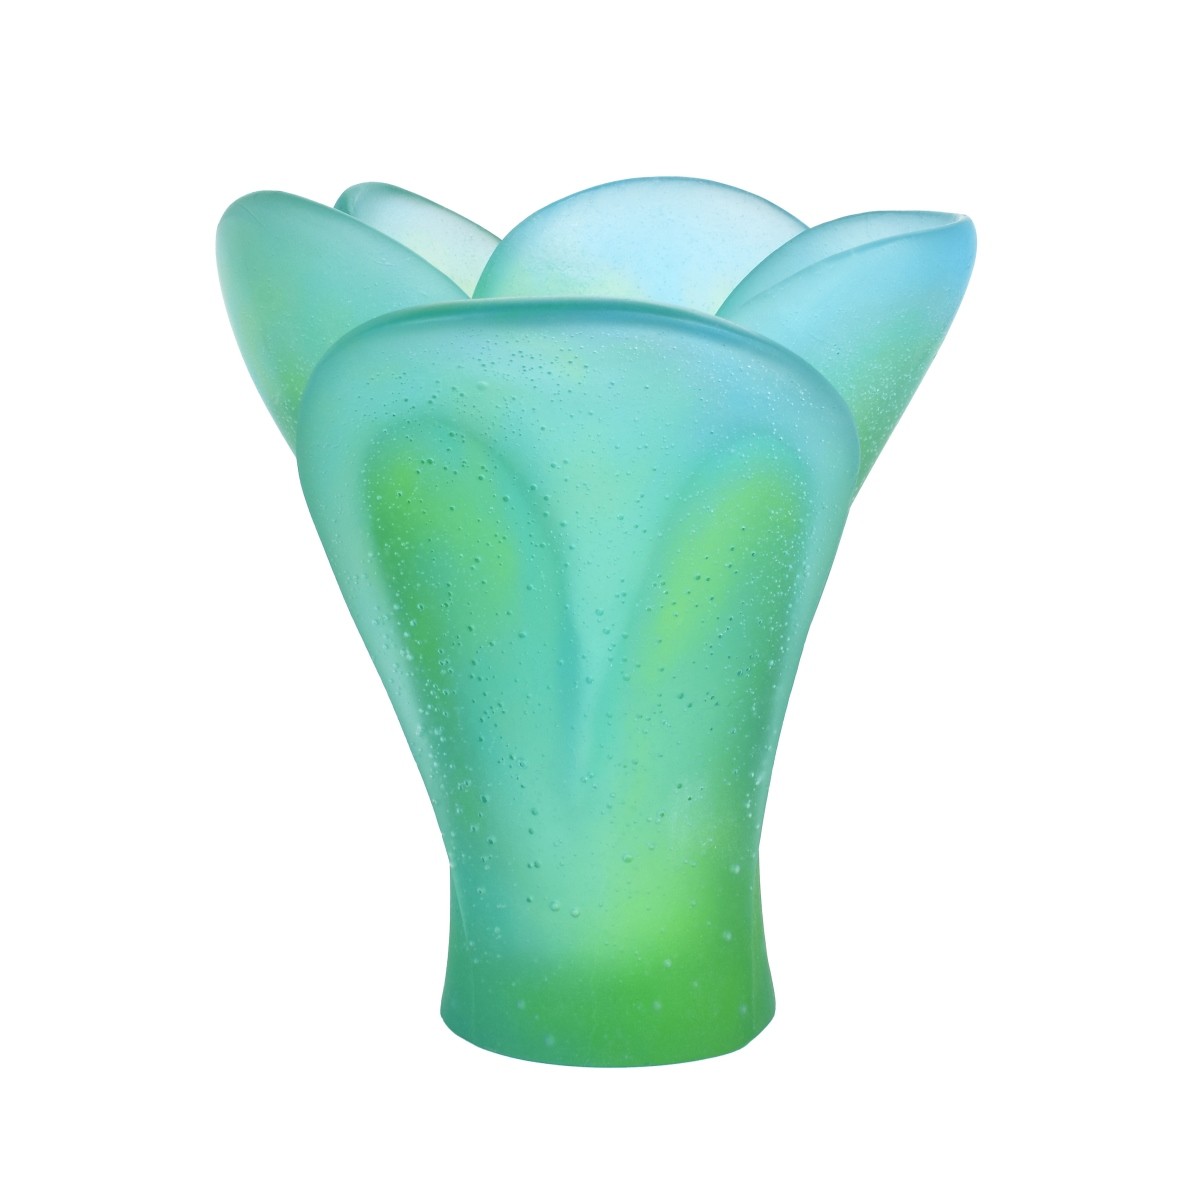 Daum Turquoise Vase